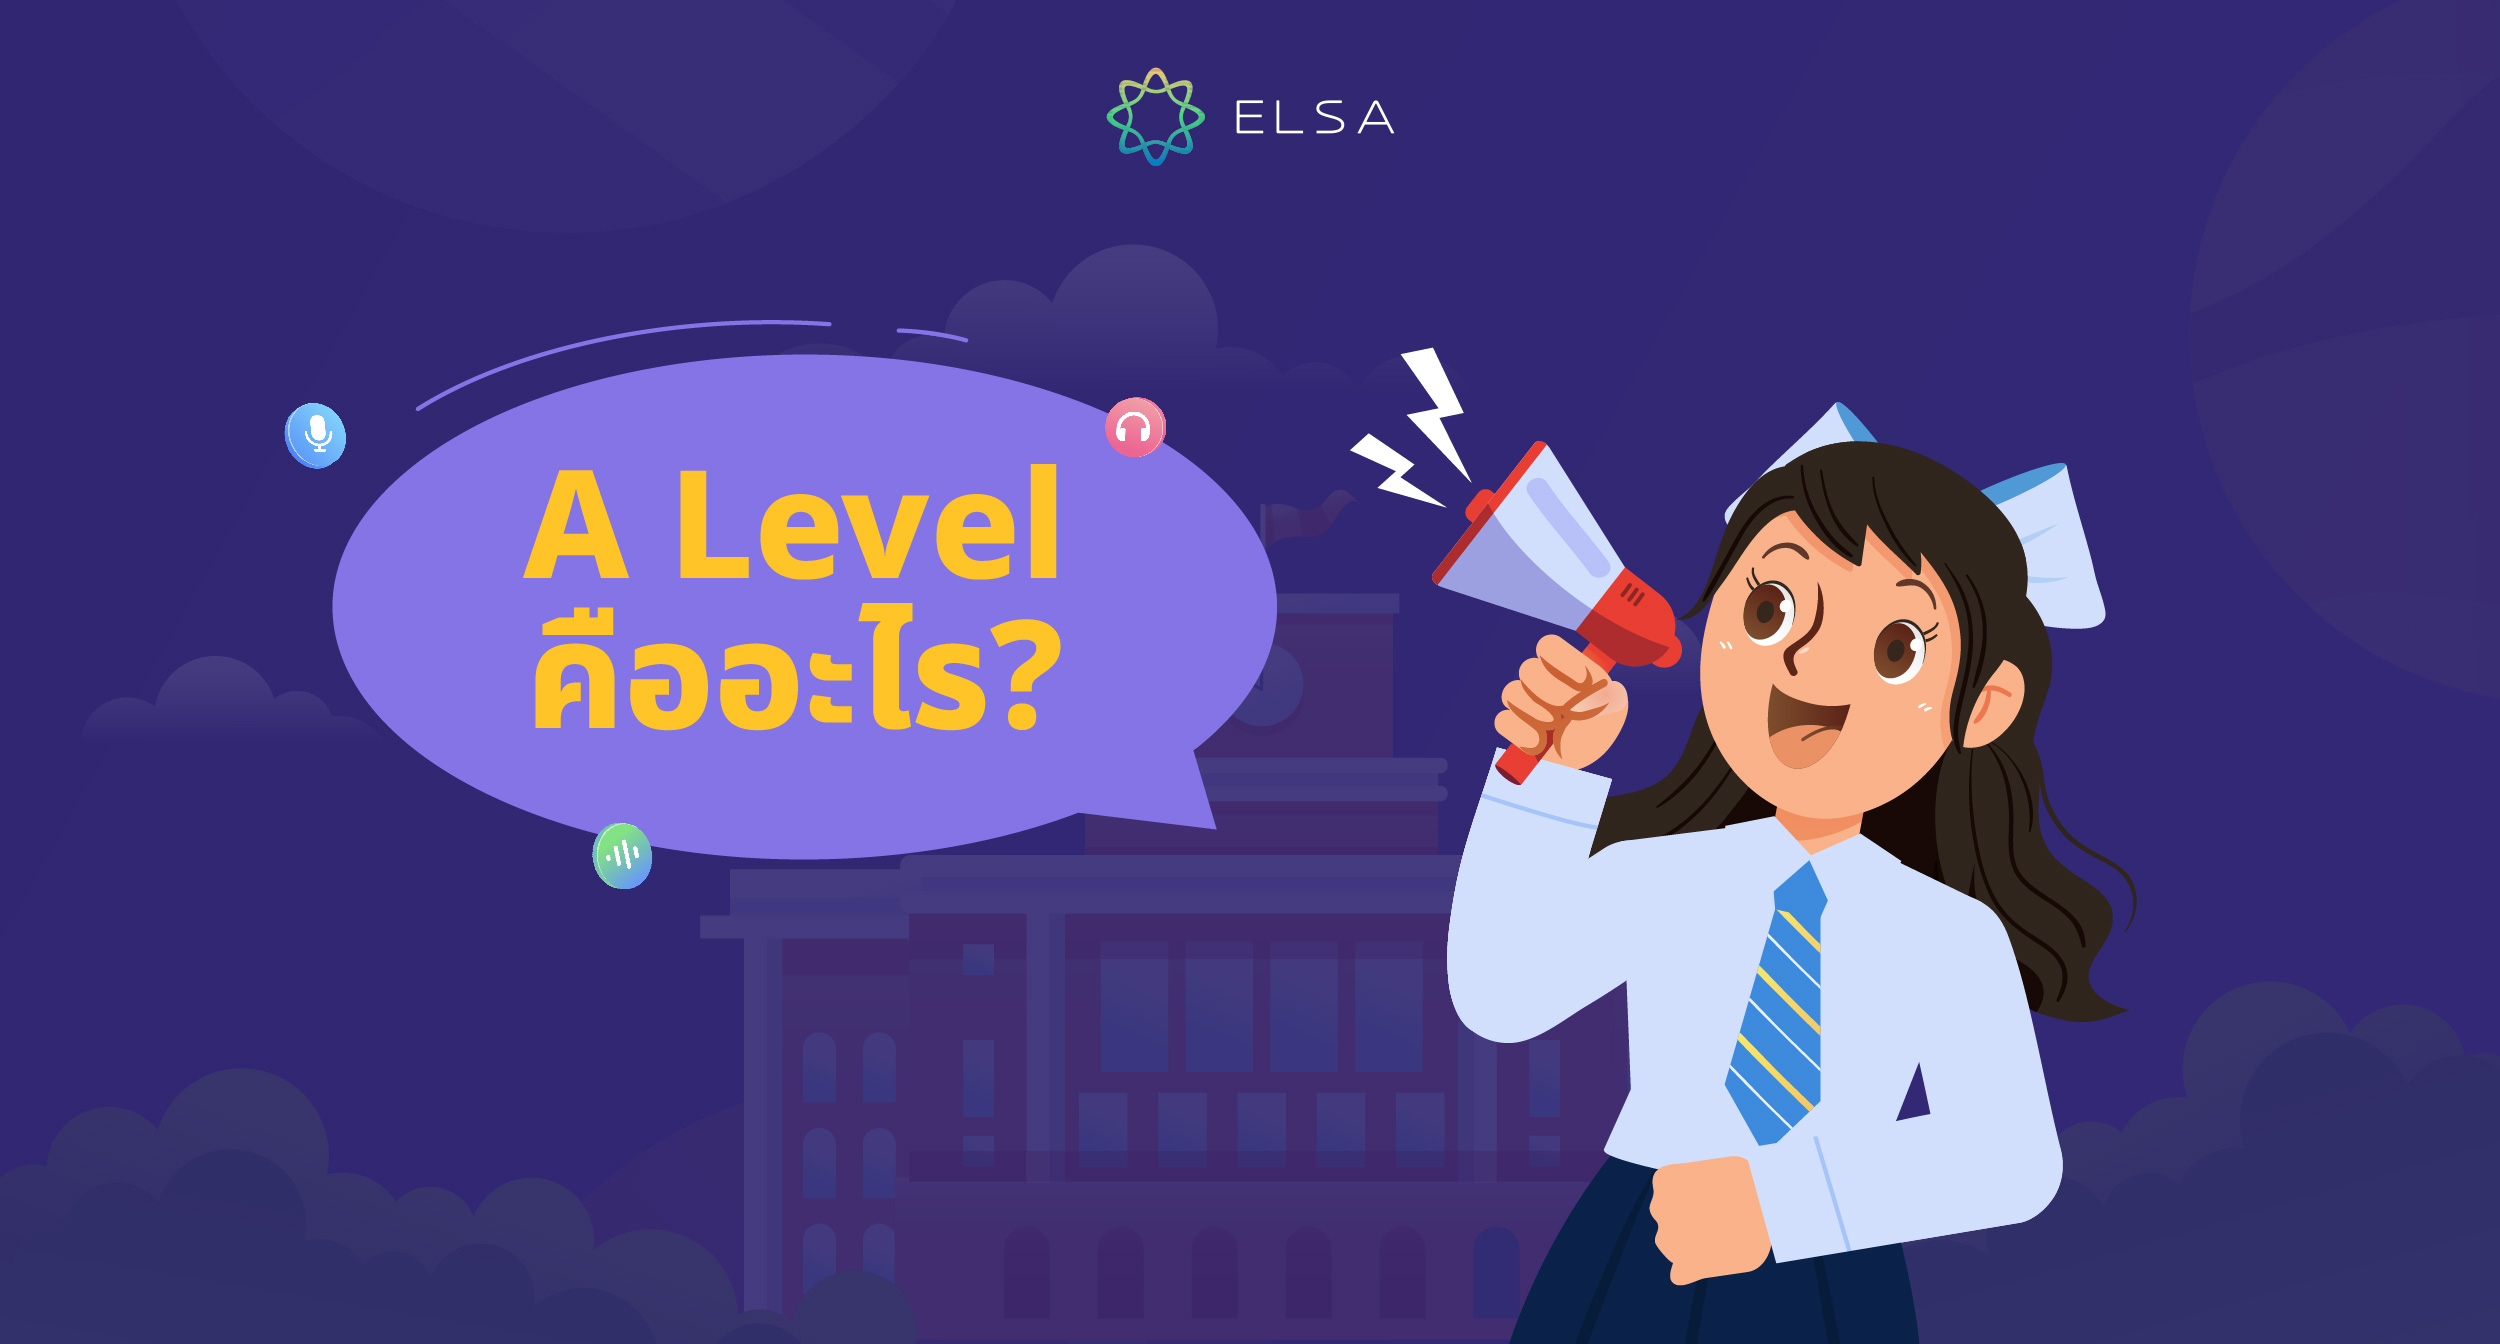 A Level คืออะไร? รวมข้อมูล 10 เรื่องที่ควรรู้เกี่ยวกับการสอบ A Level